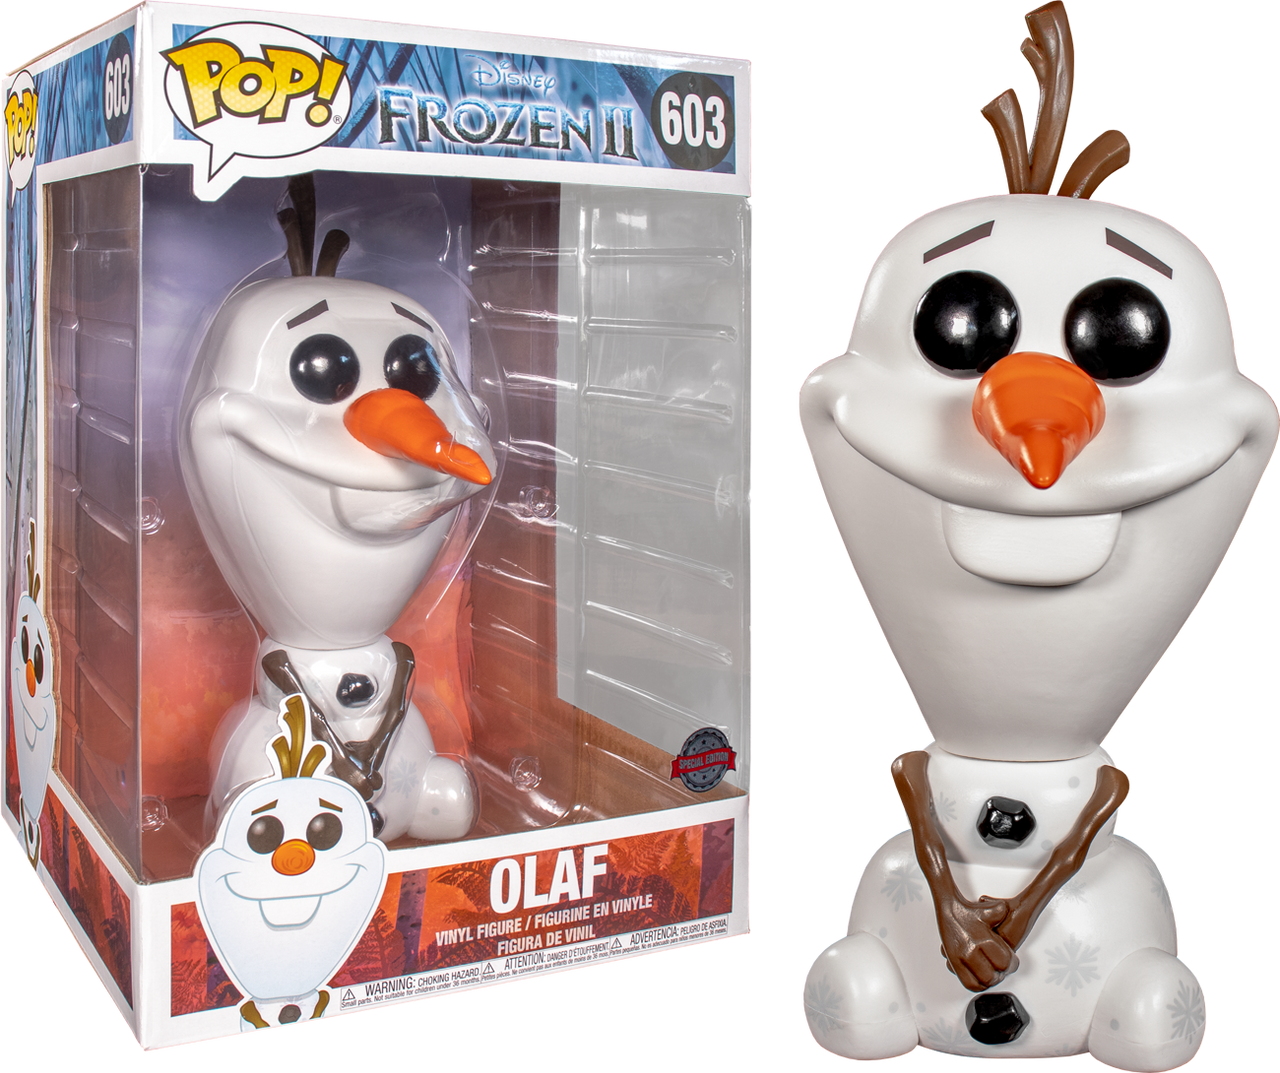 Olaf Pop! Vinyl Figure by Funko – Frozen 2, shopDisney